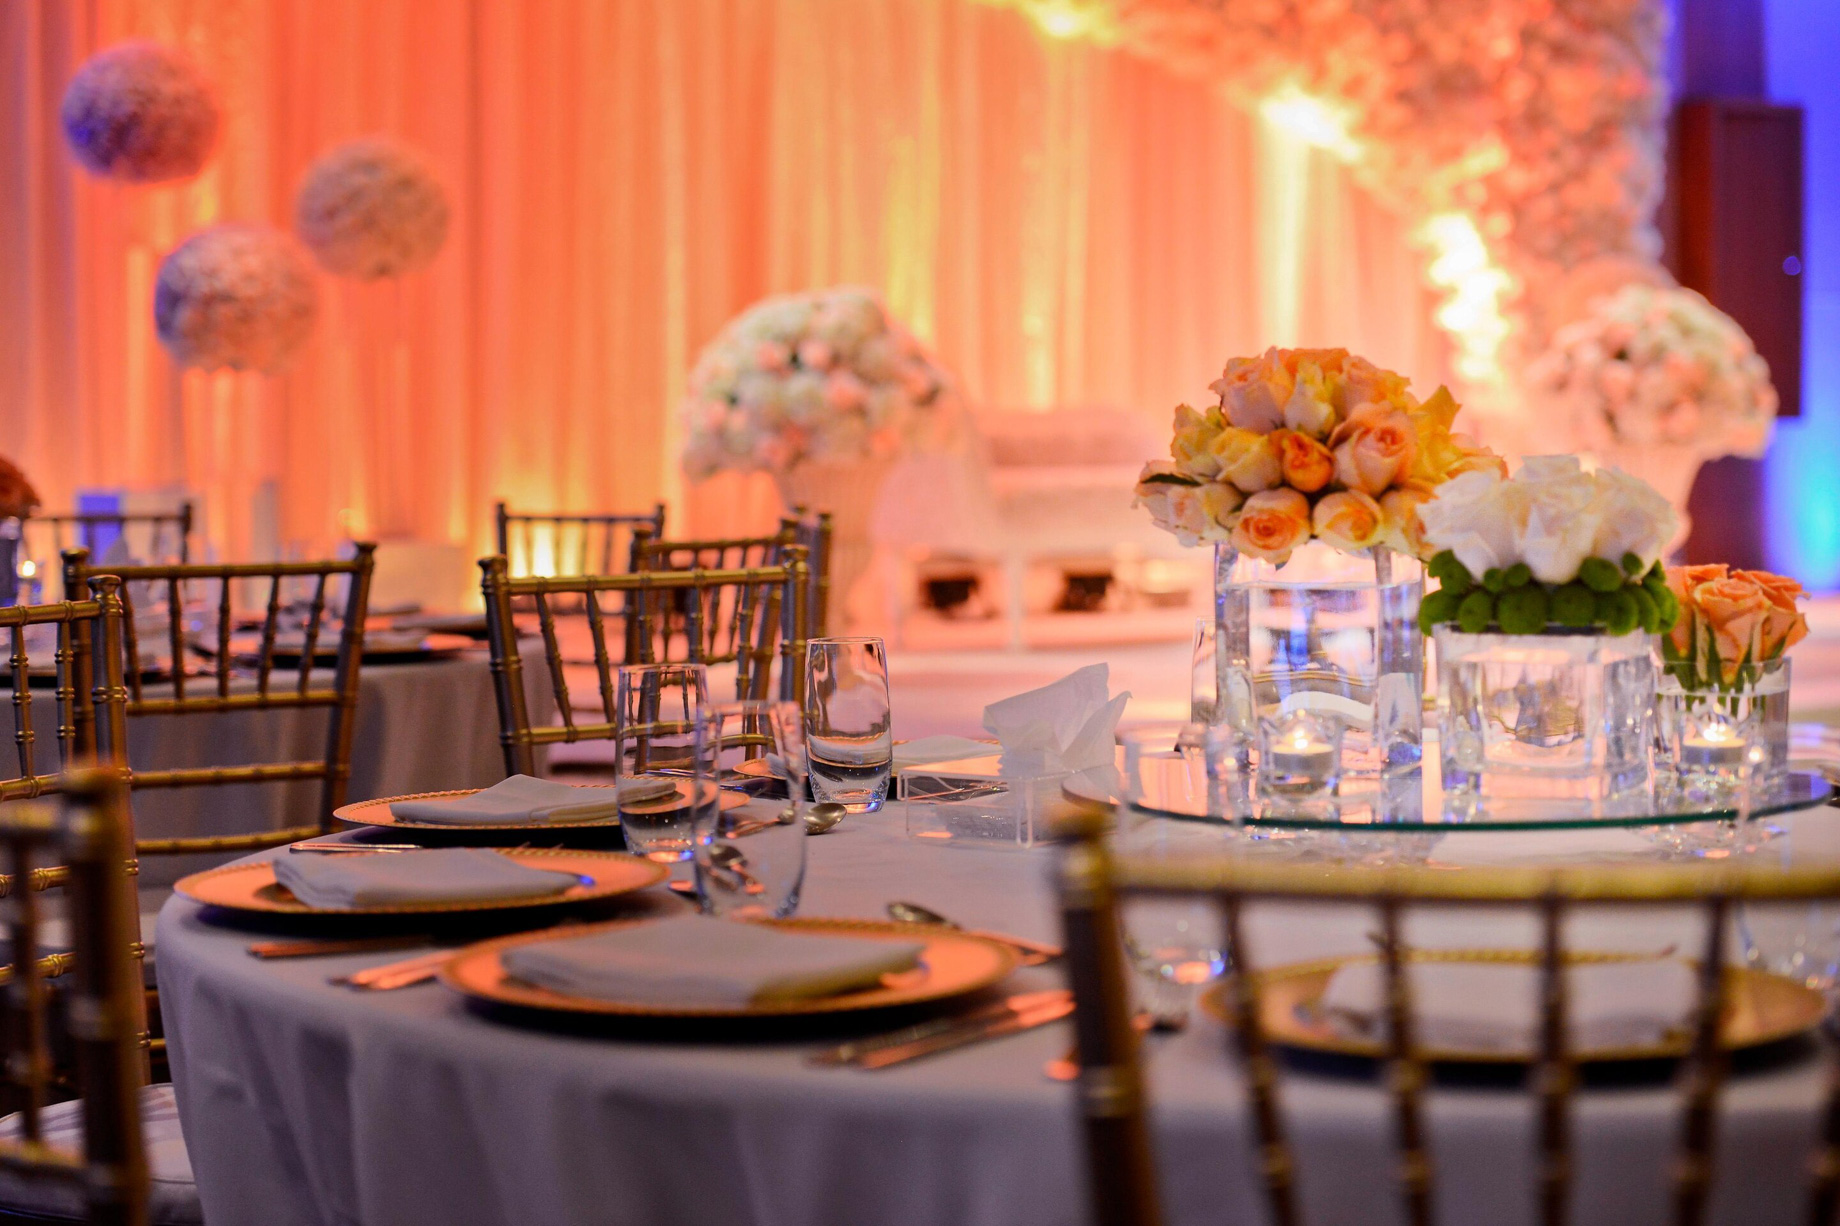 W Doha Hotel – Doha, Qatar – Wedding Table Setup